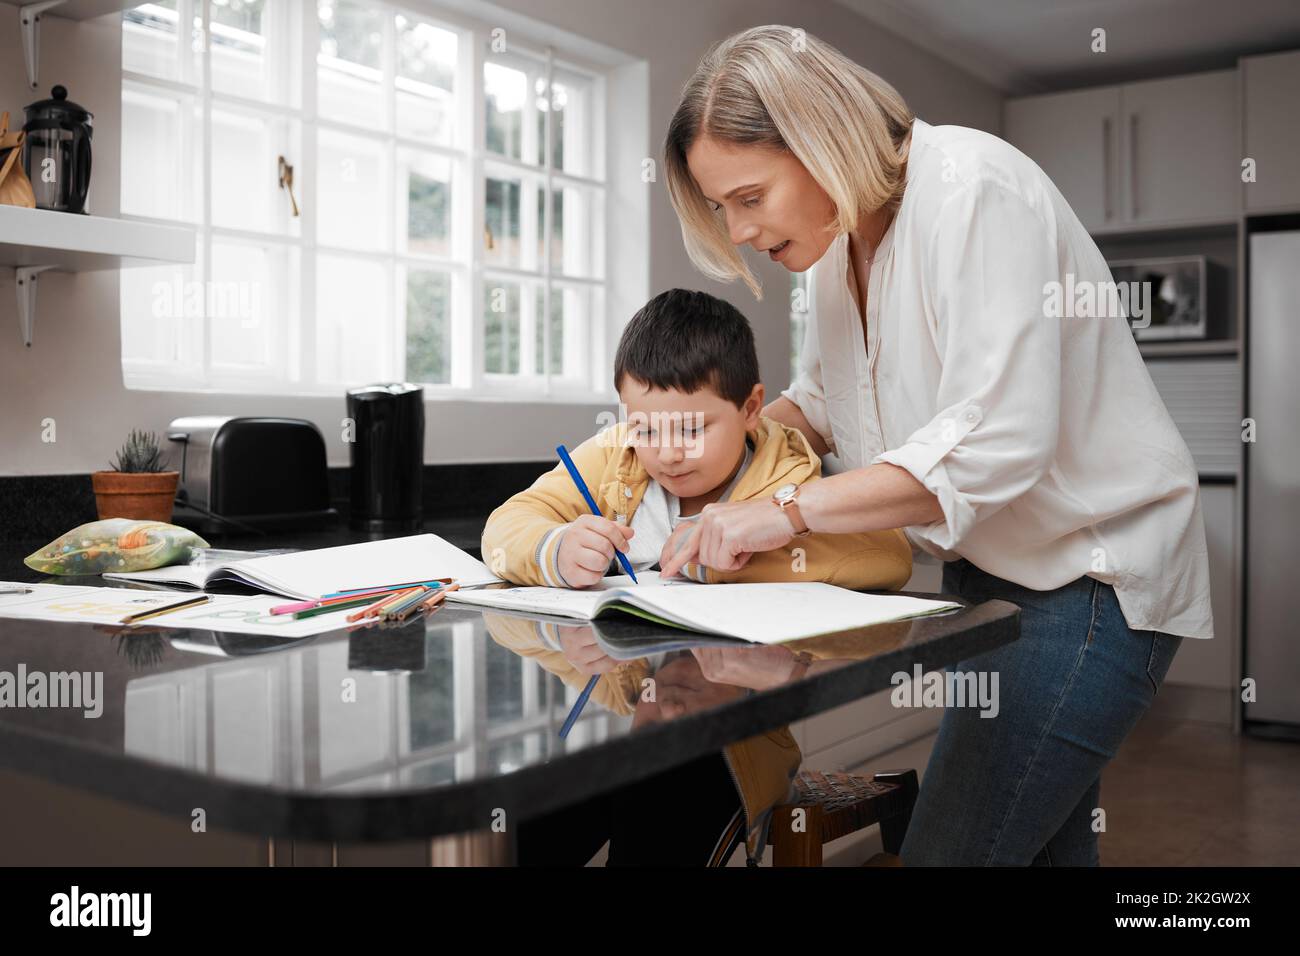 Wenn Sie es aufbrechen, ist es einfacher. Aufnahme einer schönen Mutter, die ihrem Sohn bei seinen Hausaufgaben hilft. Stockfoto